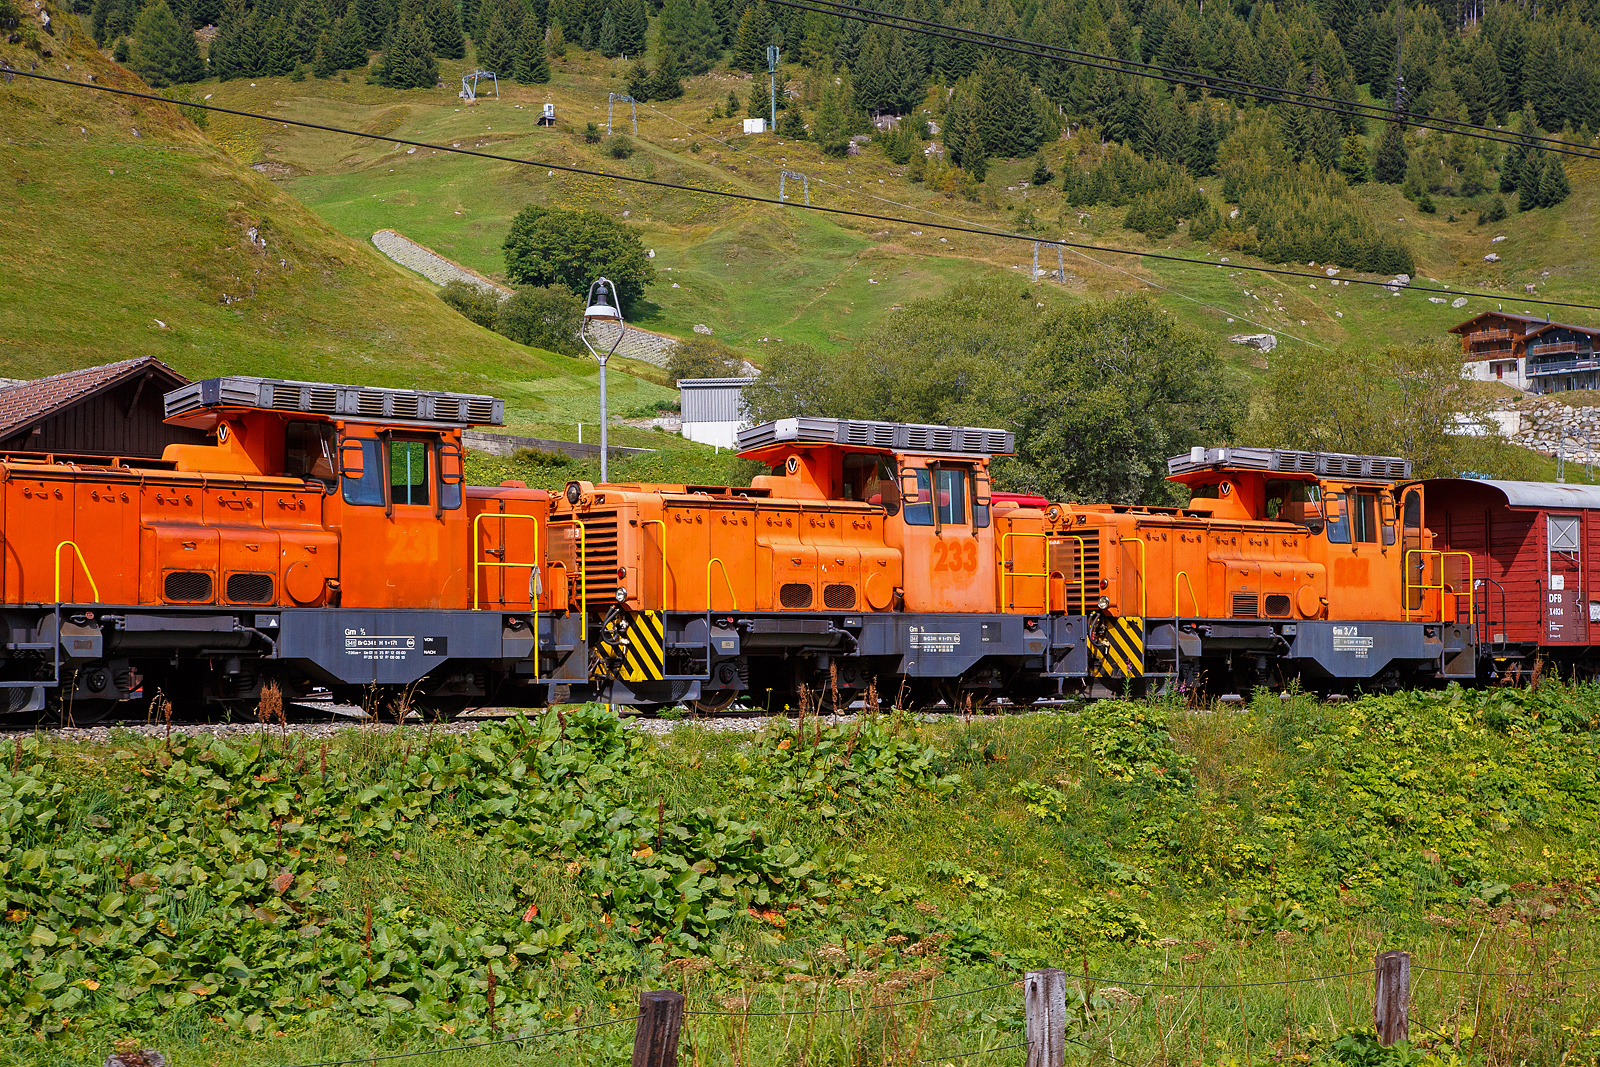 Alle drei ehemaligen dieselelektrische Rangierlokomotive der Rhätischen Bahn - RhB Gm 3/3 – 231bis 233 sind nun bei der - DFB Dampfbahn Furka-Bergstrecke AG. Hier stehen sie aufgereiht noch in der originalen RhB-Lackierung am 07 September 2021 in Realp (Uri) bei der DFB Dampfbahn Furka-Bergstrecke AG, aufgenommen aus einem fahrenden MGB-Zug heraus.

Die Gm 3/3 ist eine dreiachsige dieselelektrische Rangierlokomotive ehemals der Rhätischen Bahn (RhB). Die drei Maschinen mit den Betriebsnummern 231 bis 233 wurden zwischen 1975 und 1976 in Betrieb genommen.

Gemäß der ursprünglichen Idee sollte der Hersteller, die französische Firma Moyse /Locotracteurs Gaston Moyse), die meisten Baugruppen aus der Serienproduktion eines französischen Loktyps übernehmen. Die vielen Sonderwünsche der RhB – MTU-Dieselmotor, Vakuumbremse, Vielfachsteuerung, Führerstandseinrichtung nach RhB-Norm, erzwangen jedoch umfangreiche Änderungen und verzögerten die Lieferung der Anfang 1974 bestellten Fahrzeuge erheblich. Typenbezeichnung Moyse ist Type CF 33 EPA 500 MTL, die RhB 231 wurde 1975 unter der Fabriknummer 3553 gebaut, 1976 folgten die RhB 232 unter der Fabriknummer 3554 und die RhB 232 unter der Fabriknummer 3555.

Die Stundenleistung der maximal 55 km/h schnellen und 34 t schweren Lokomotiven beträgt 220 kW am Rad. Der Antrieb erfolgt durch einen MTU V 6-Zylinder-Dieselmotor (MTU 6 V 331 TC10) mit 386 kW (525 PS) Leistung, dieser treibt den Hauptgenerator an, welcher den elektrischen Gleichstrom-Fahrmotor elektrischen. Das Drehmoment wird vom Fahrmotor auf das nachgeschaltete Getriebe übertragen, hier kann zwischen Rangier- und Streckengang gewechselt werden. Die 3 Radsätze werden mittels Kardanwellen vom Getriebe auf die Achsgetriebe angetrieben.

Haupteinsatzgebiet dieser diesel-elektrischen Adhäsionslokomotiven bei der RhB war der Rangierdienst in Landquart, Chur und Untervaz. Dank ihrer hohen Anfahrzugkraft (im Rangiergang 153 kN) und der möglichen Doppeltraktion eigneten sich die robusten Fahrzeuge auch für den schweren Bauzugdienst. Schneeräumfahrten, gemeinsam mit der kleinen Schneeschleuder Xrotm 9216 oder der großen Xrotmt 9217, gehörten ebenfalls zum Einsatzprogramm bei der RhB. Ab Herbst 2020 wurden die drei Loks nur noch als Reserve vorgehalten, im Februar 2021 wurden sie aus dem Betrieb genommen und stillgelegt. Mitte April 2021 wurden alle drei Lokomotiven dann an die Dampfbahn Furka Bergstrecke verkauft.

Bei der DFB:
Für den schweren Rangierdienst in Realp sowie für Baulogistikfahrten im Furka-Scheiteltunnel ist die DFB auf eine leistungsfähige und zuverlässige Adhäsions-Diesellok angewiesen. Bis dahin wurde dafür die von Jung gebaute Gm 4/4 71  Elch  eingesetzt. Seit der Übernahme dieser Lok von der Matterhorn Gotthard Bahn (MGB) im Jahr 2014 hat dieses Fahrzeug den ordnungsgemäßen Unterhalt erfahren. Im Winter 2021/2022 wurde jedoch an dieser inzwischen 55-jährigen Lok eine aufwendige Totalrevision nötig.

Gleichzeitig wurde bekannt, dass die Rhätische Bahn (RhB) ihre drei Gm 3/3 231 bis 233  Moyse  durch Neufahrzeuge ersetzt, so wurde seitens der DFB Ende 2018 das Interesse an diesen Lokomotiven bekundet. Anlässlich der Verhandlungen im ersten Quartal 2021 wurden der DFB AG zwei Lokomotiven zugesagt. Als der dritten Lok die Verschrottung drohte, ergab sich für die DFB die Gelegenheit, auch diese zwecks erweiterter Ersatzteilhaltung zu übernehmen. Die Überführung (ob aus eigener Kraft ist mir unklar) der drei Gm 3/3 durch die RhB von Landquart nach Disentis/Mustér erfolgt am frühen Morgen des 12. April 2021. Am Tag darauf wurden die drei  Moyse  einzeln durch die MGB, jeweils in einen MGB-Personenzug direkt hinter einer HGe 4/4 II (gemischte  Zahnrad- und Adhäsionslokomotive) eingestellt. Die RhB Gm 3/3sind ja reine Adhäsionsloks, zwischen Disentis und Andermatt bzw. Realp gibt es ja Zahnstangeabschnitte mit bis zu 120 ‰ Neigung.

Danach ging die Dieselcrew der DFB an die Bereitstellung der ersten Gm 3/3. Am 28. Dezember 2021 konnte die Gm 231 für den Betrieb freigegeben werden. An diesem Tag und an den beiden nachfolgenden Tagen wurden theoretische und praktische Fahrzeugschulungen durchgeführt. Aktuell sind acht Lokführer auf den Gm 3/3 instruiert, weitere Schulungen werden folgen.

Danach galt es, Erfahrungen im Schneeräumeinsatz im Bahnhof Realp mit der Xrotm 9216  Schleuderina  zu sammeln. Die Gm 231 kommt außerdem für schwere Rangiermanöver zum Einsatz. Inzwischen hatten auch die Arbeiten zur Wiederinbetriebnahme der Gm 233 begonnen. Mit zwei betriebsbereiten Loks wird die Dieselcrew die Traktionsbedürfnisse auf den Adhäsionsabschnitten ohne Zahnstange flexibel abdecken können. Die Gm 232 bleibt bis auf weiteres außer Betrieb.

Status der Gm 3/3: 
Lok 231 und 233: in Betrieb
Lok 232 abgestellt (Reserve/Ersatzteilspender) 
Die UIC-Fahrzeugnummern sind 90 85 822 0231-7, 0232-5 und 0233-3.

TECHNISCHE DATEN:
Spurweite: 	1.000 mm (Meterspur)
Achsformel: C
Länge über Puffer: 7.960 mm
Achsabstände: 1.935 mm / 2.265 mm = 4.200 mm
Breite: 2.700 mm
Höhe: 3.560 mm
Dienstgewicht: 34 t
Höchstgeschwindigkeit:  55 km/h (35 km/h im Rangiergang)
Dauerleistung Dieselmotor: 386 kW (525 PS), 
Motordrehzahl: max. 2.000 U/min
Dauerleistung am Rad: 220 kW (300 PS)
Anfahrzugkraft: 153 kN (Rangiergang) / 61 kN (Streckengang)
Stundenzugkraft: 83.4 kN (Rangiergang) / 34.3 kN (Streckengang)
Treibraddurchmesser: 	920 mm (neu)
Motor: MTU V 6-Zylinder-Dieselmotor vom Typ 6V 33 1 TC10 
Antrieb: Dieselelektrisch (Drehmomentübertagung siehe Text)
Anhängelast:  35-500 t im Streckengang je nach Neigung (nur Adhäsion)
Bremssysteme: Handbremse, direkte Druckluftbremse (Rangierbremse), druckluftgesteuerte Vakuumbremse (automatische Bremse), elektrische Bremse (Widerstandsbremse)
Sicherheitssysteme: Sicherheitssteuerung (Totmann und Wachsamkeit), Zugsicherung ZSI 90, Geschwindigkeitsmesser mit Fahrtenschreiber (Farbscheibe)

Quellen: DFB Dampfbahn Furka-Bergstrecke AG, bahnonline.ch/, de.wikipedia.org/ und hellertal.startbilder.de